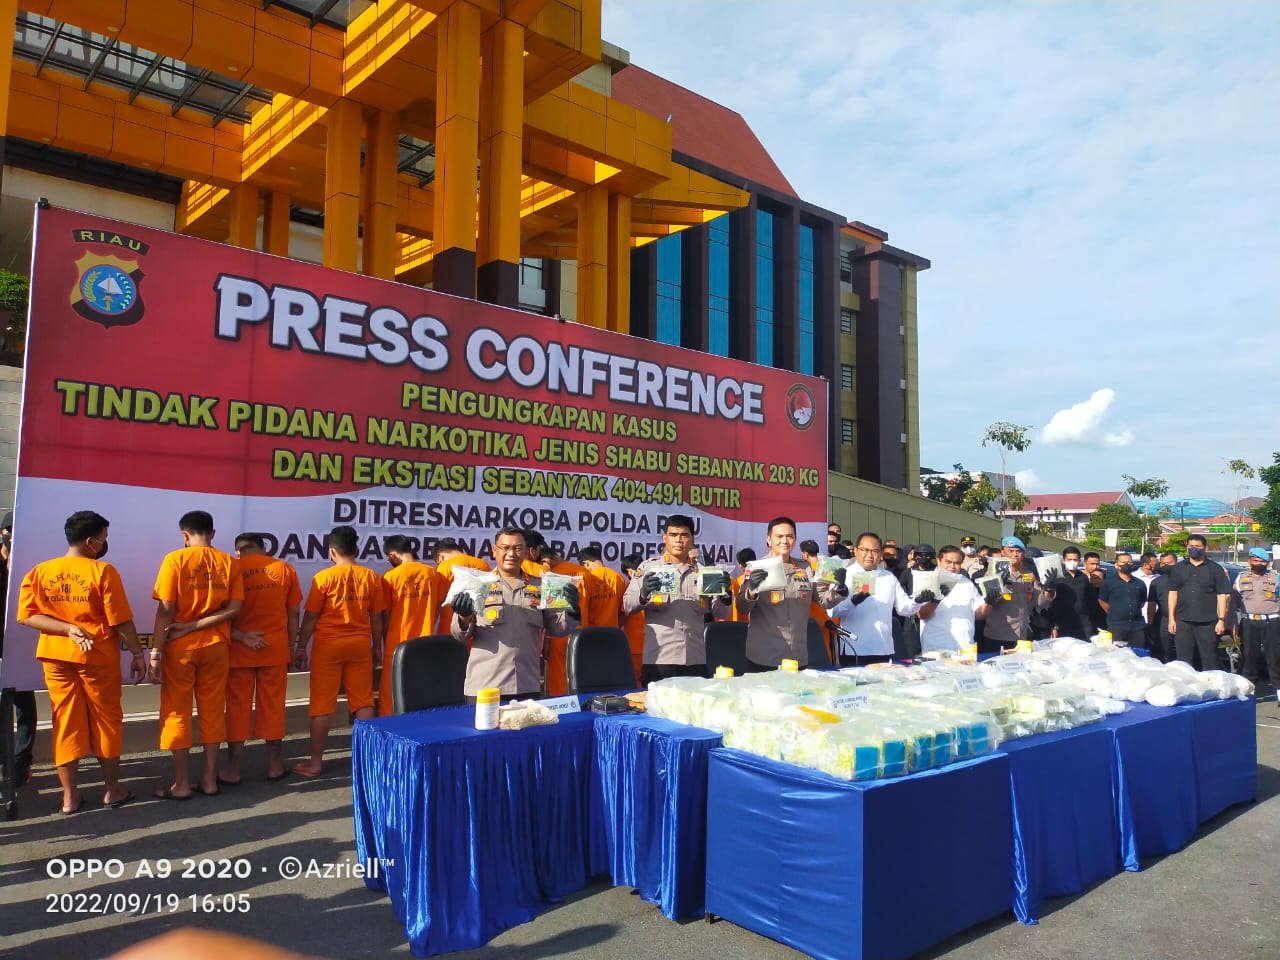 Polda Riau Gulung 16 Komplotan Narkoba, 203 KG Sabu dan 404.491 Butir Ekstasi Diamankan